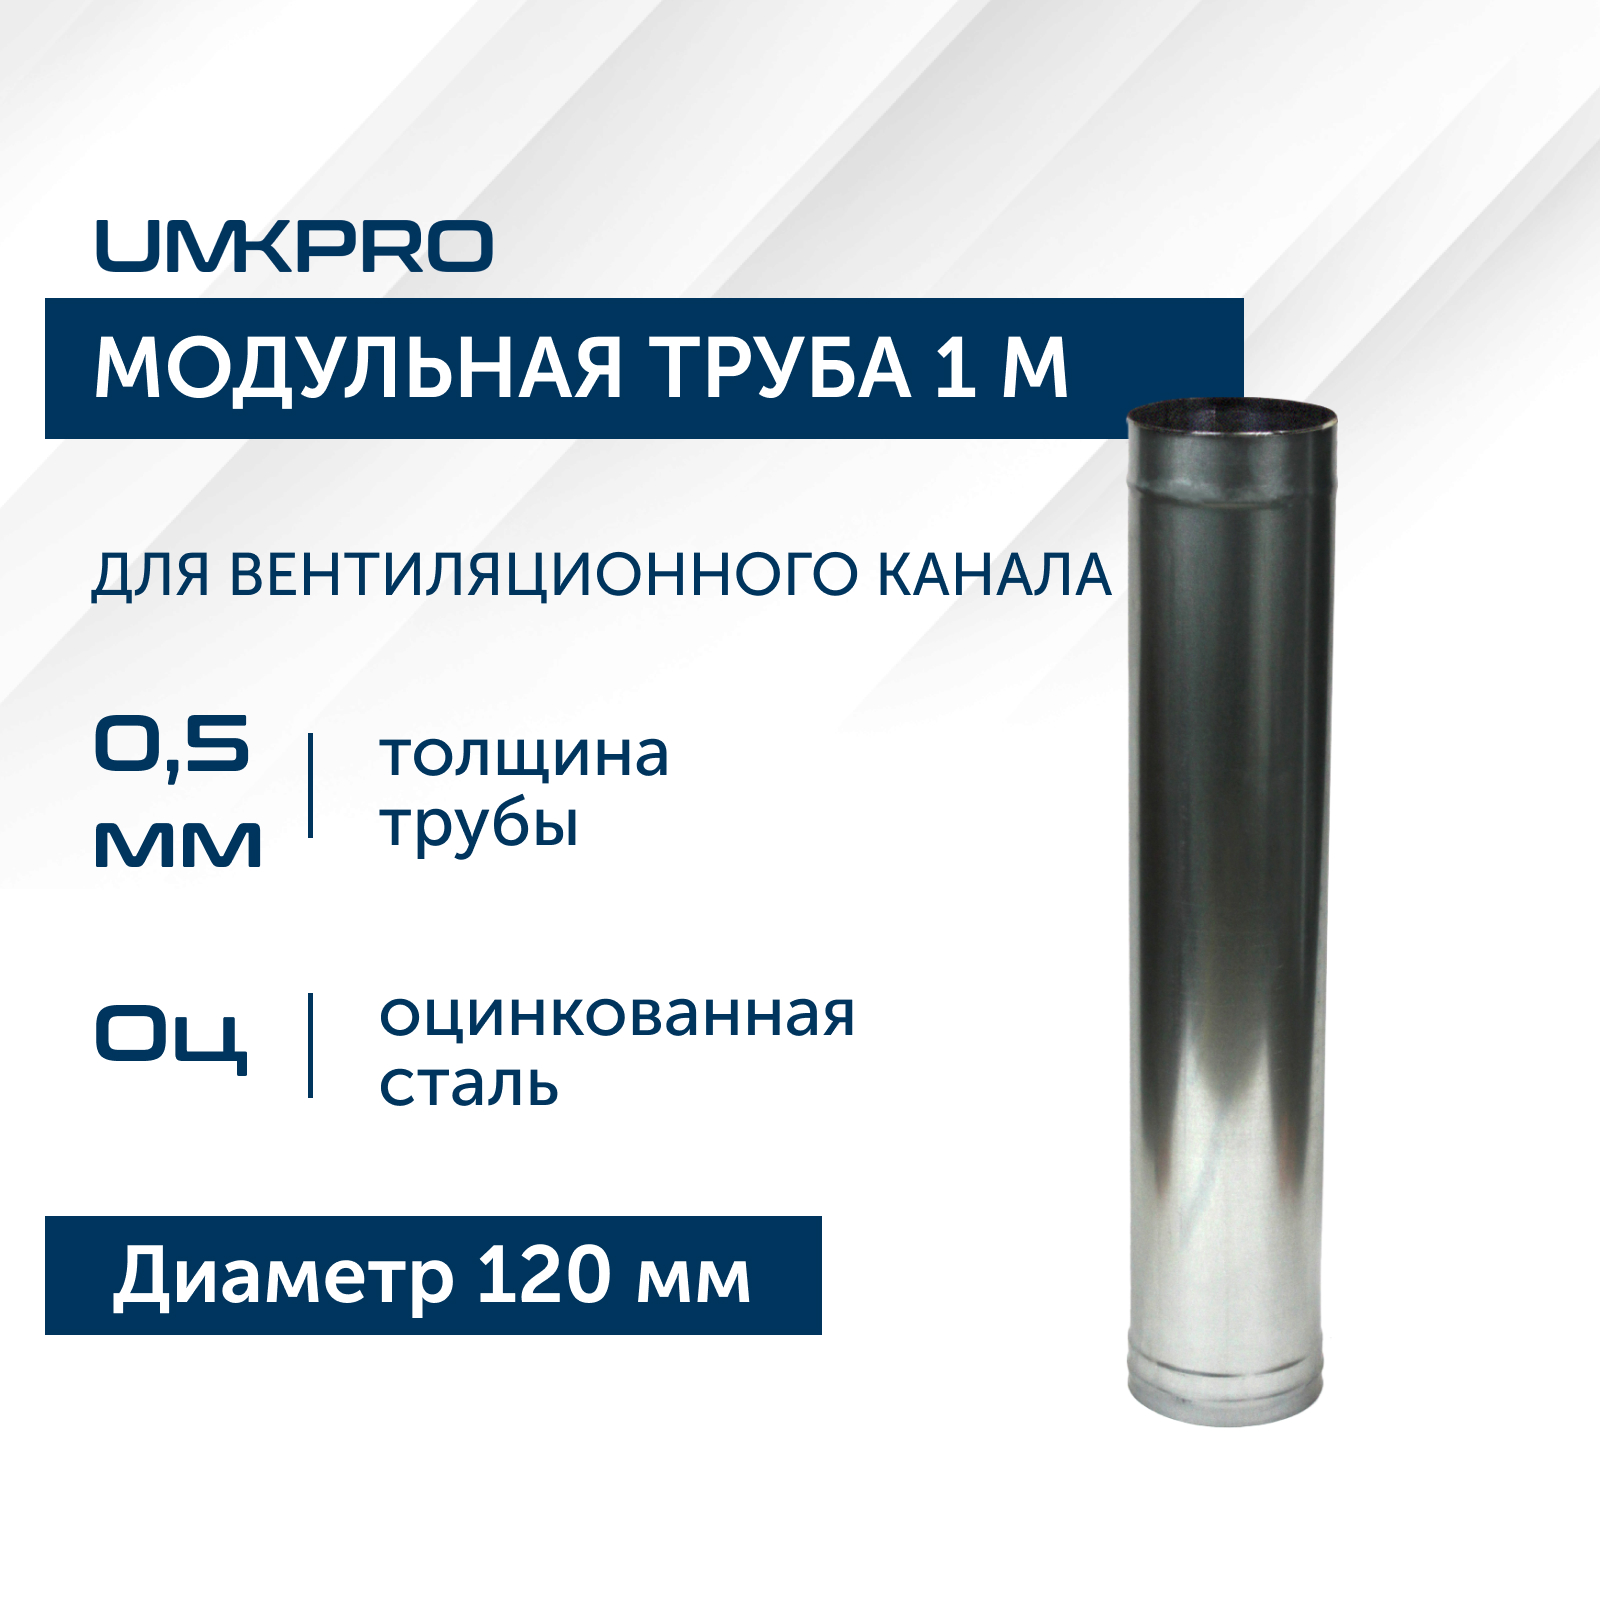 Труба модульная для дымохода 1 м UMKPRO D 120, Оц/0,5мм модульная прихожая горизонт 18